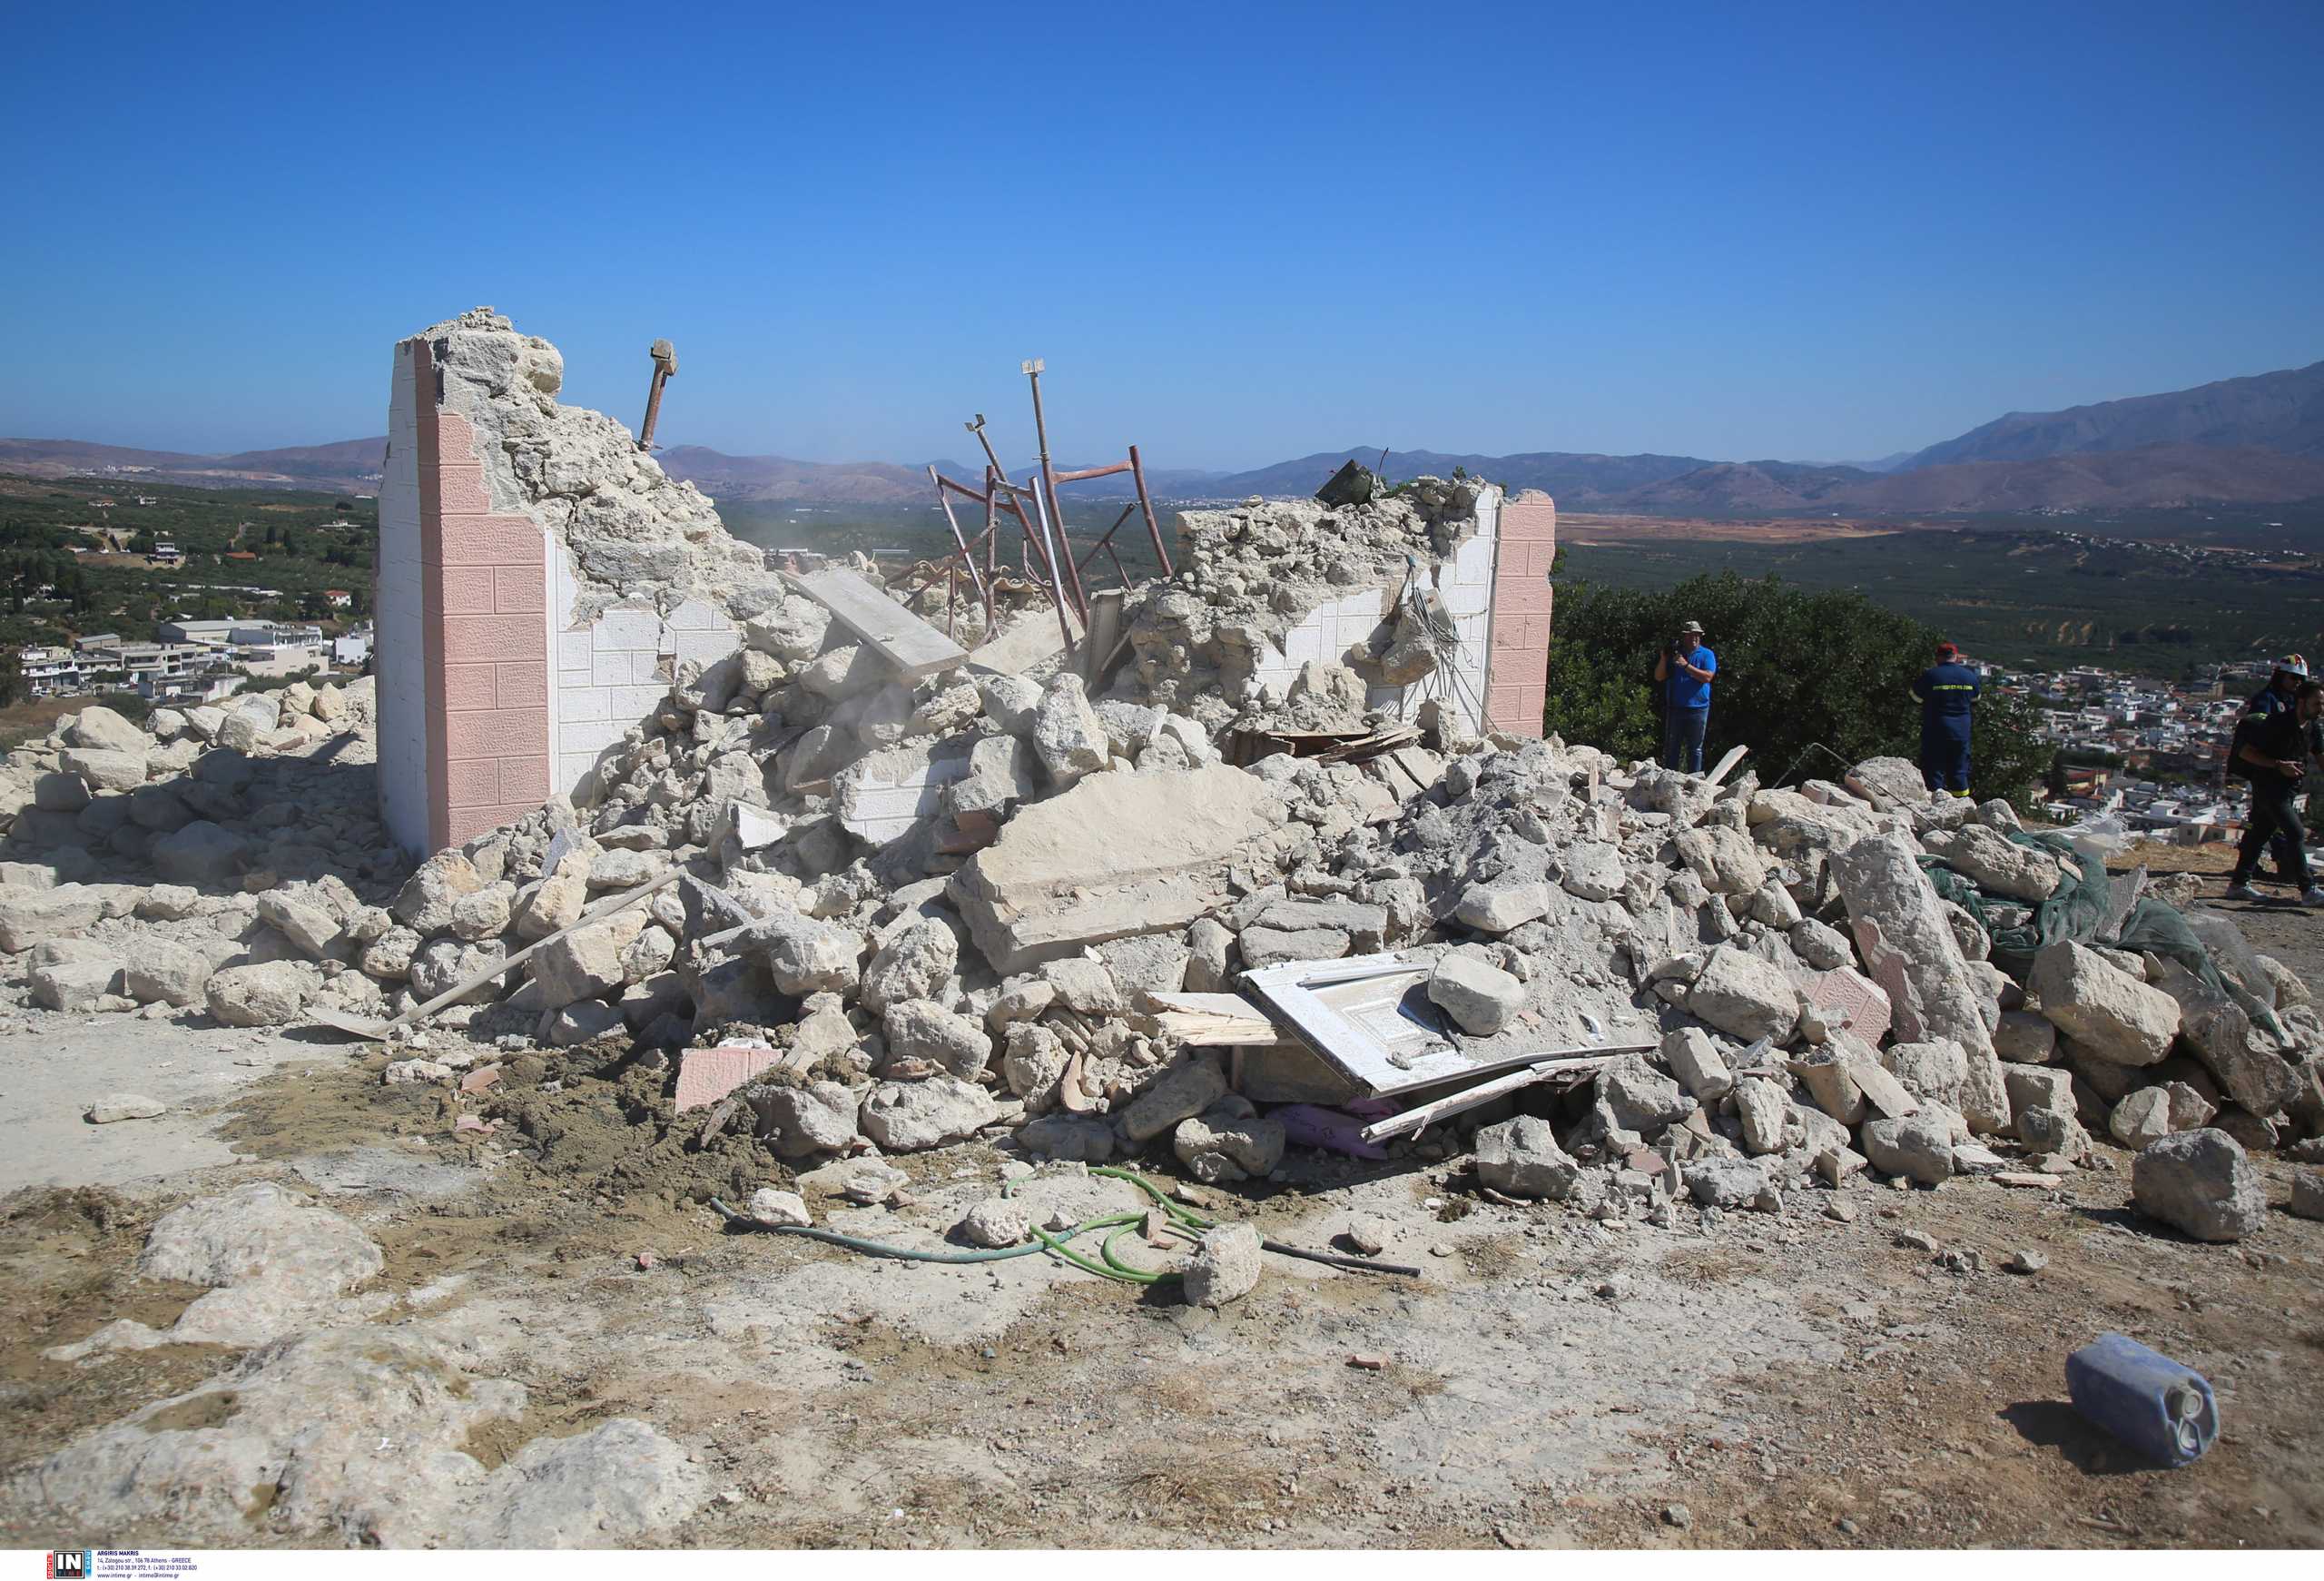 Σεισμός στο Ηράκλειο: Νεκρός ο πατέρας, τραυματίας ο γιος στο εκκλησάκι που κατέρρευσε - Πολλά τα ακατοίκητα σπίτια, σε καταυλισμούς οι σεισμόπληκτοι (ΦΩΤΟ)